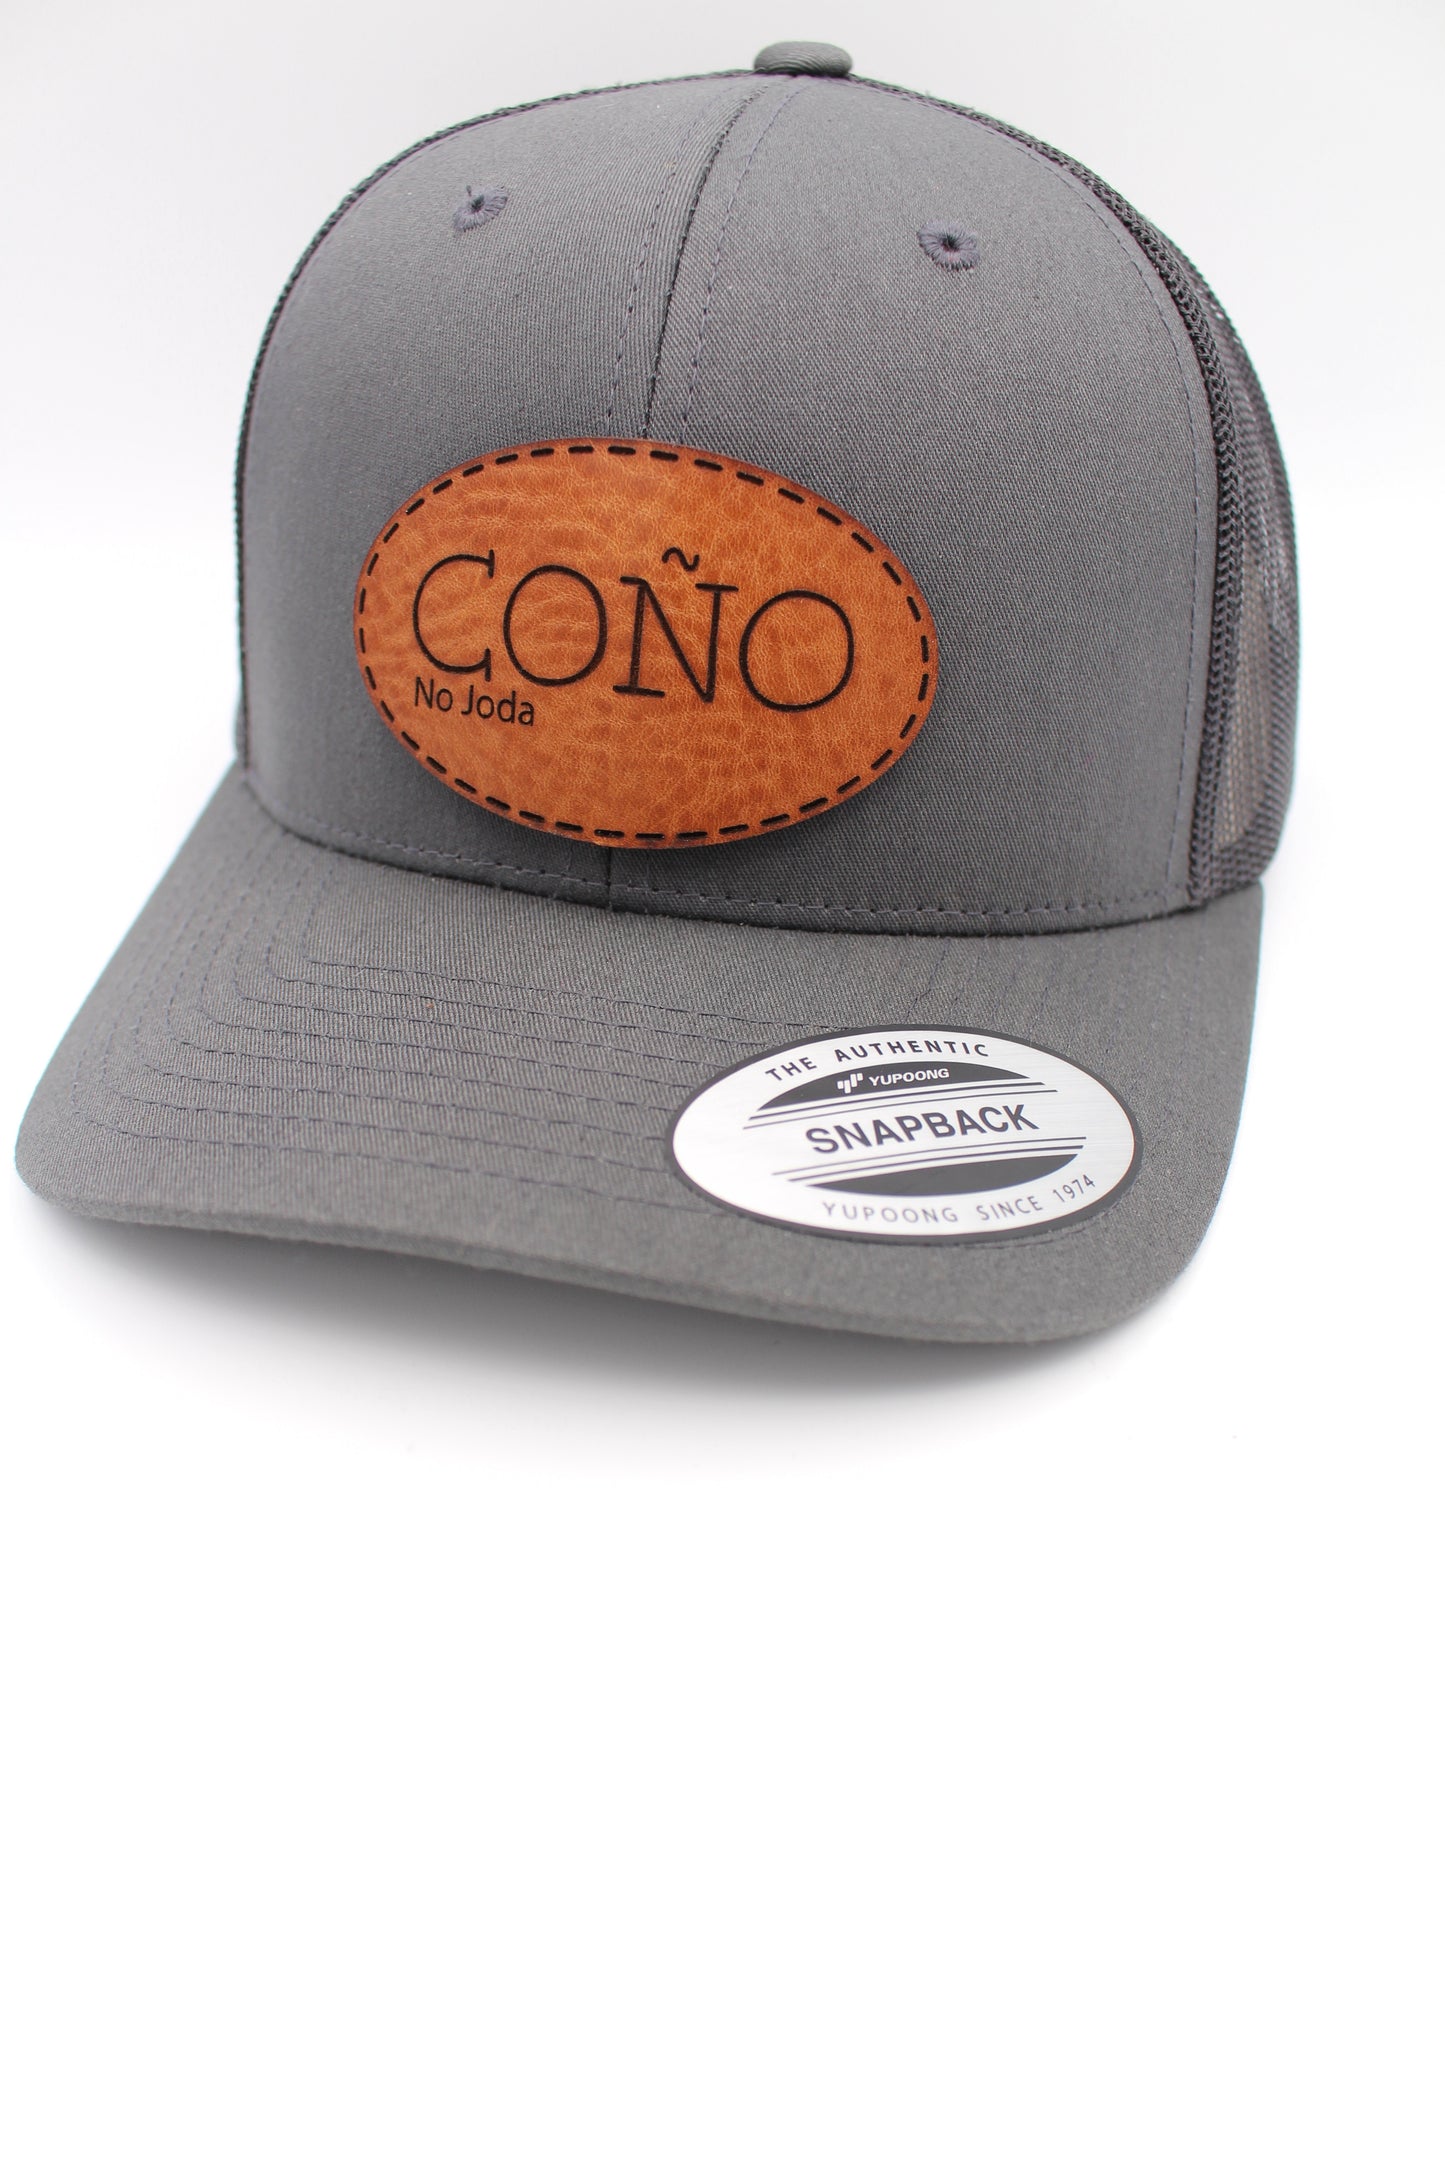 Coño (no joda) Leather Patch Hat | Coño Trucker Hat | Dominican Art Trucker Hat